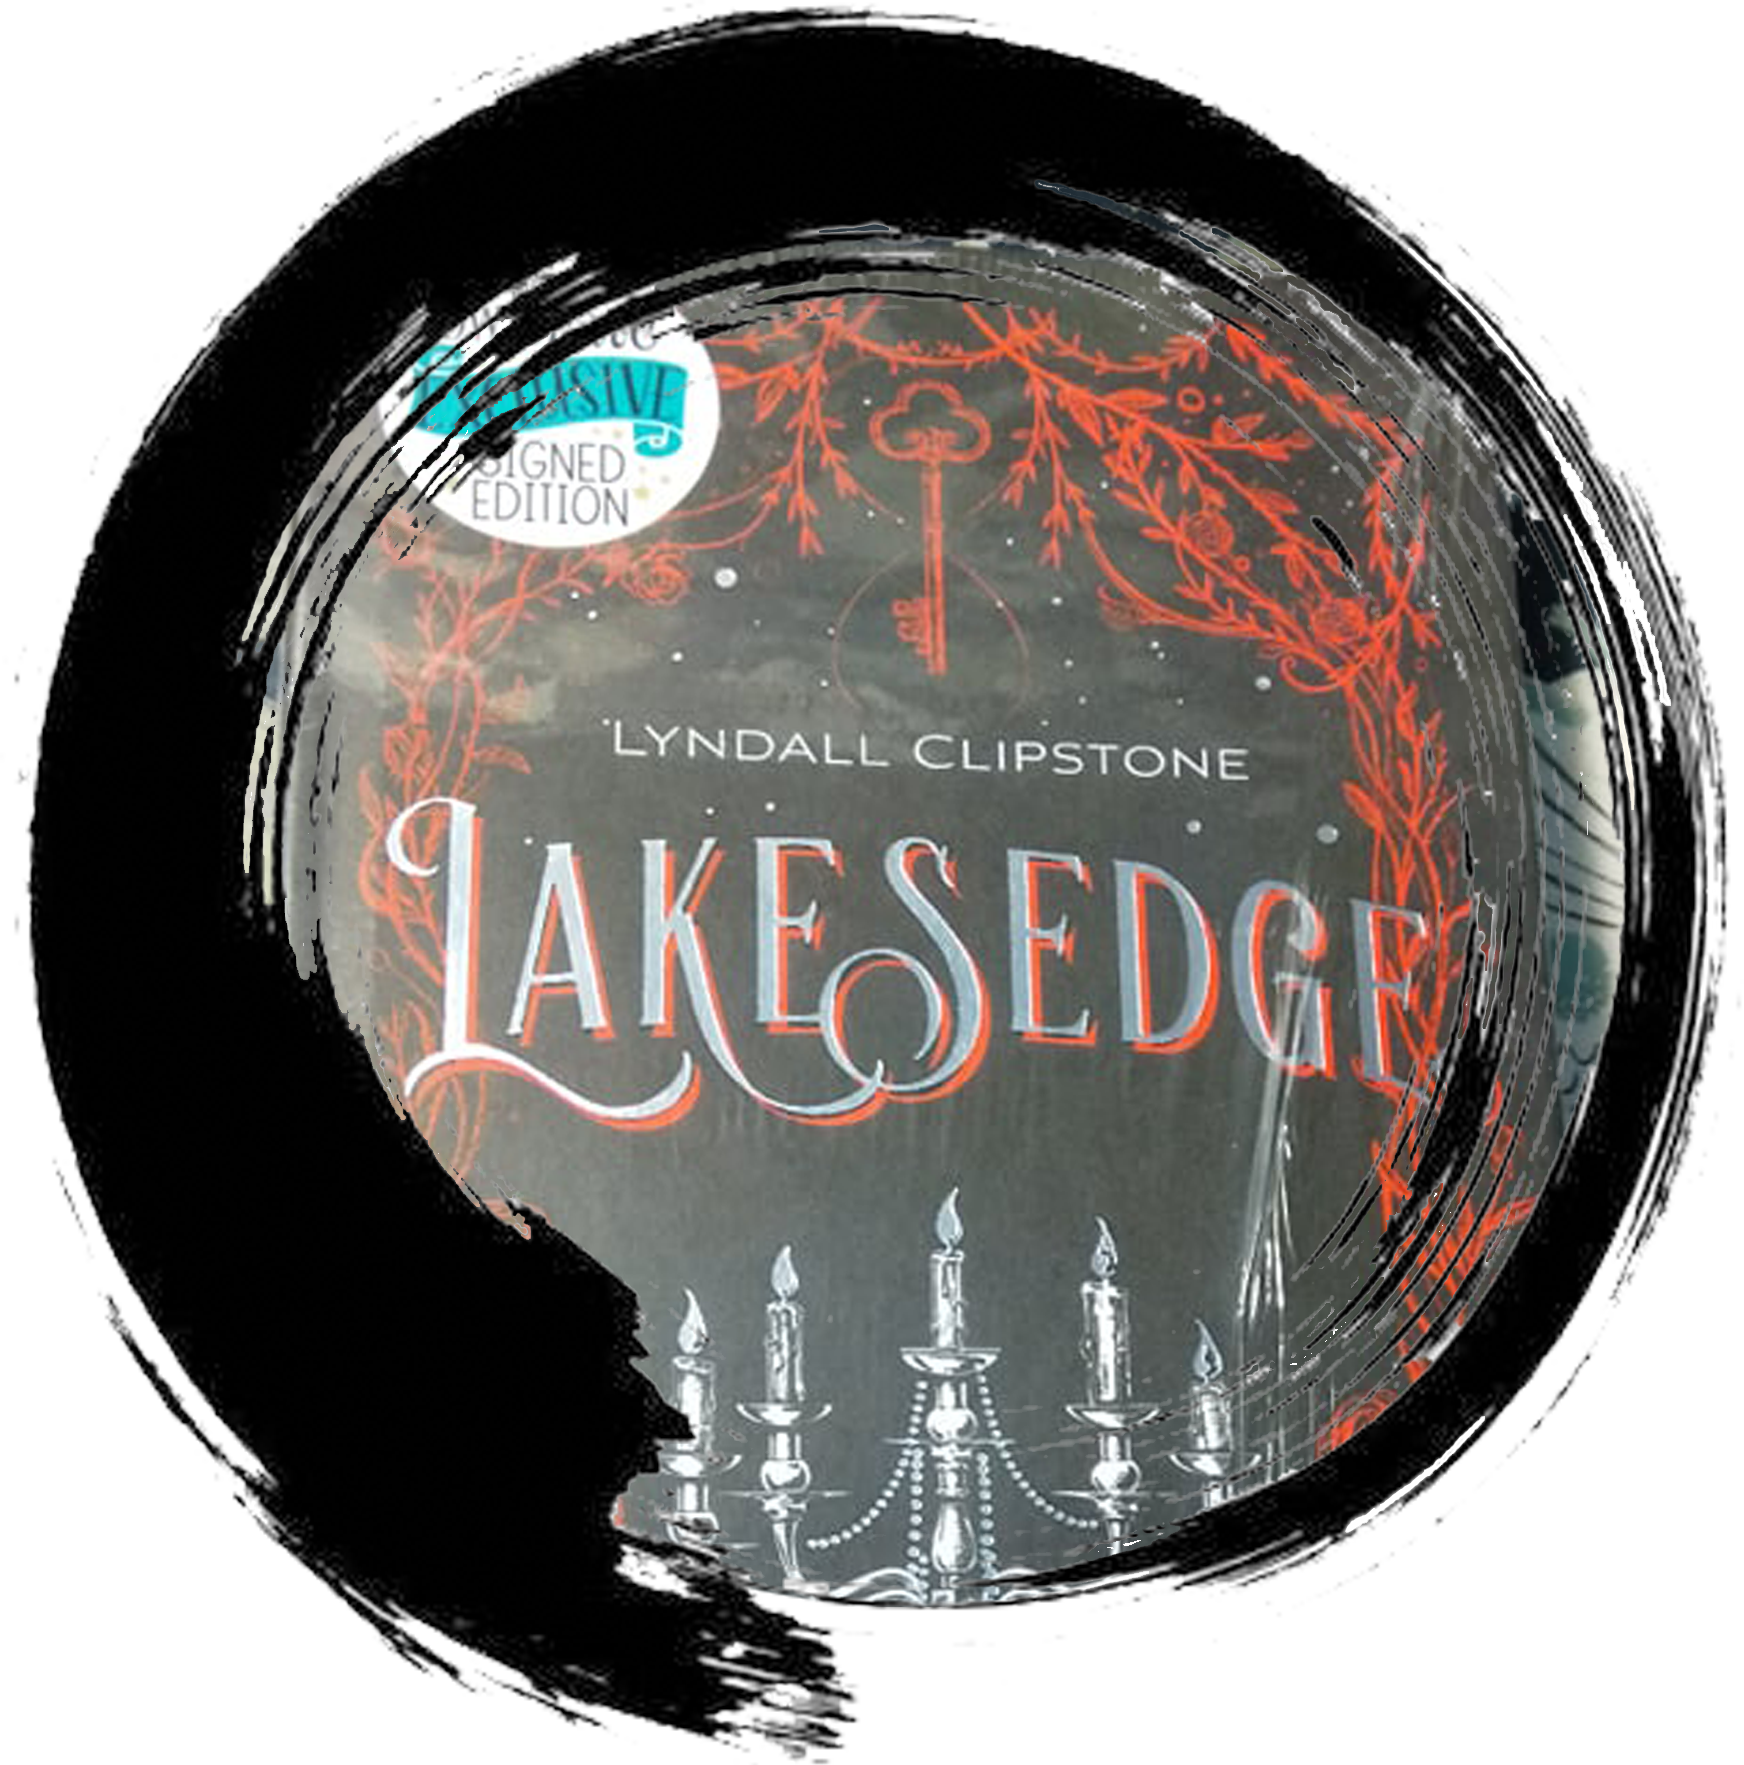 Lakesedge